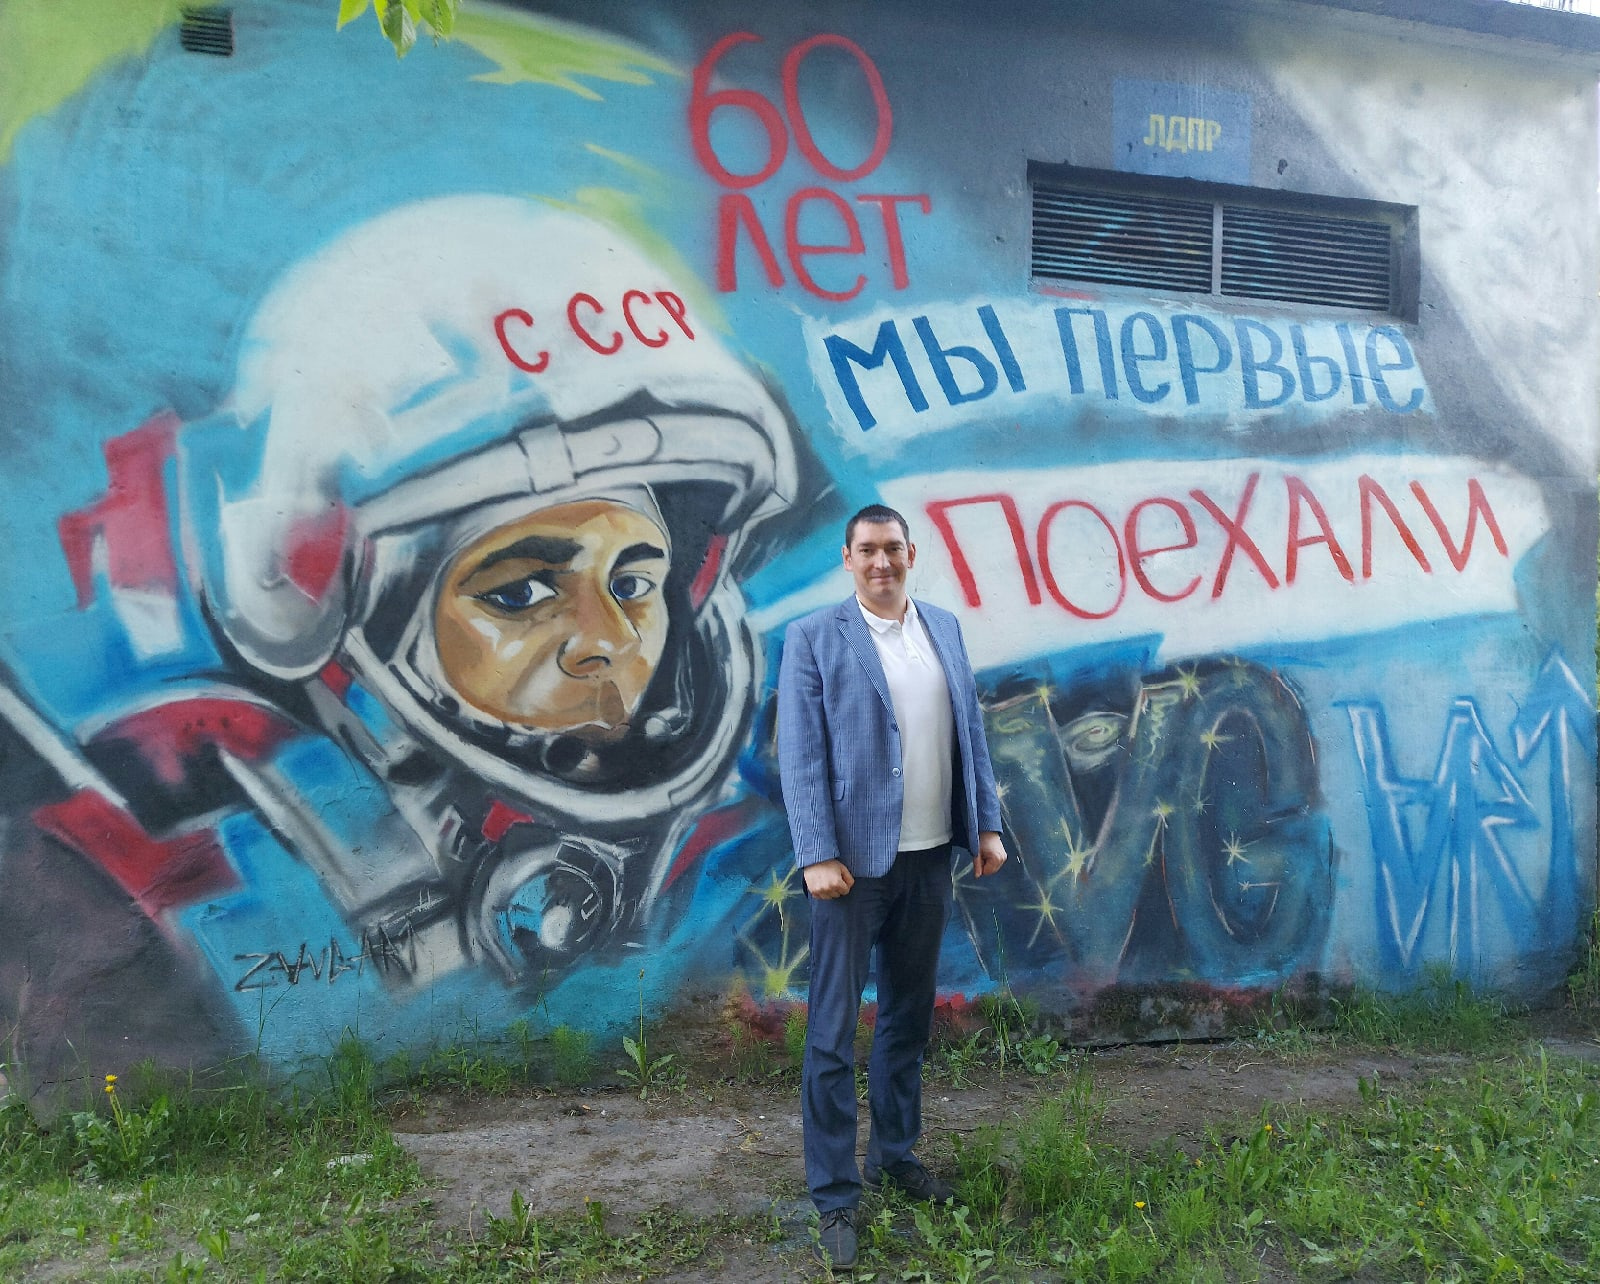 Появление этого граффити на Яграх <a href="https://29.ru/text/culture/2021/05/12/69910964/" class="_" target="_blank">инициировал Владимир Сухарев</a>